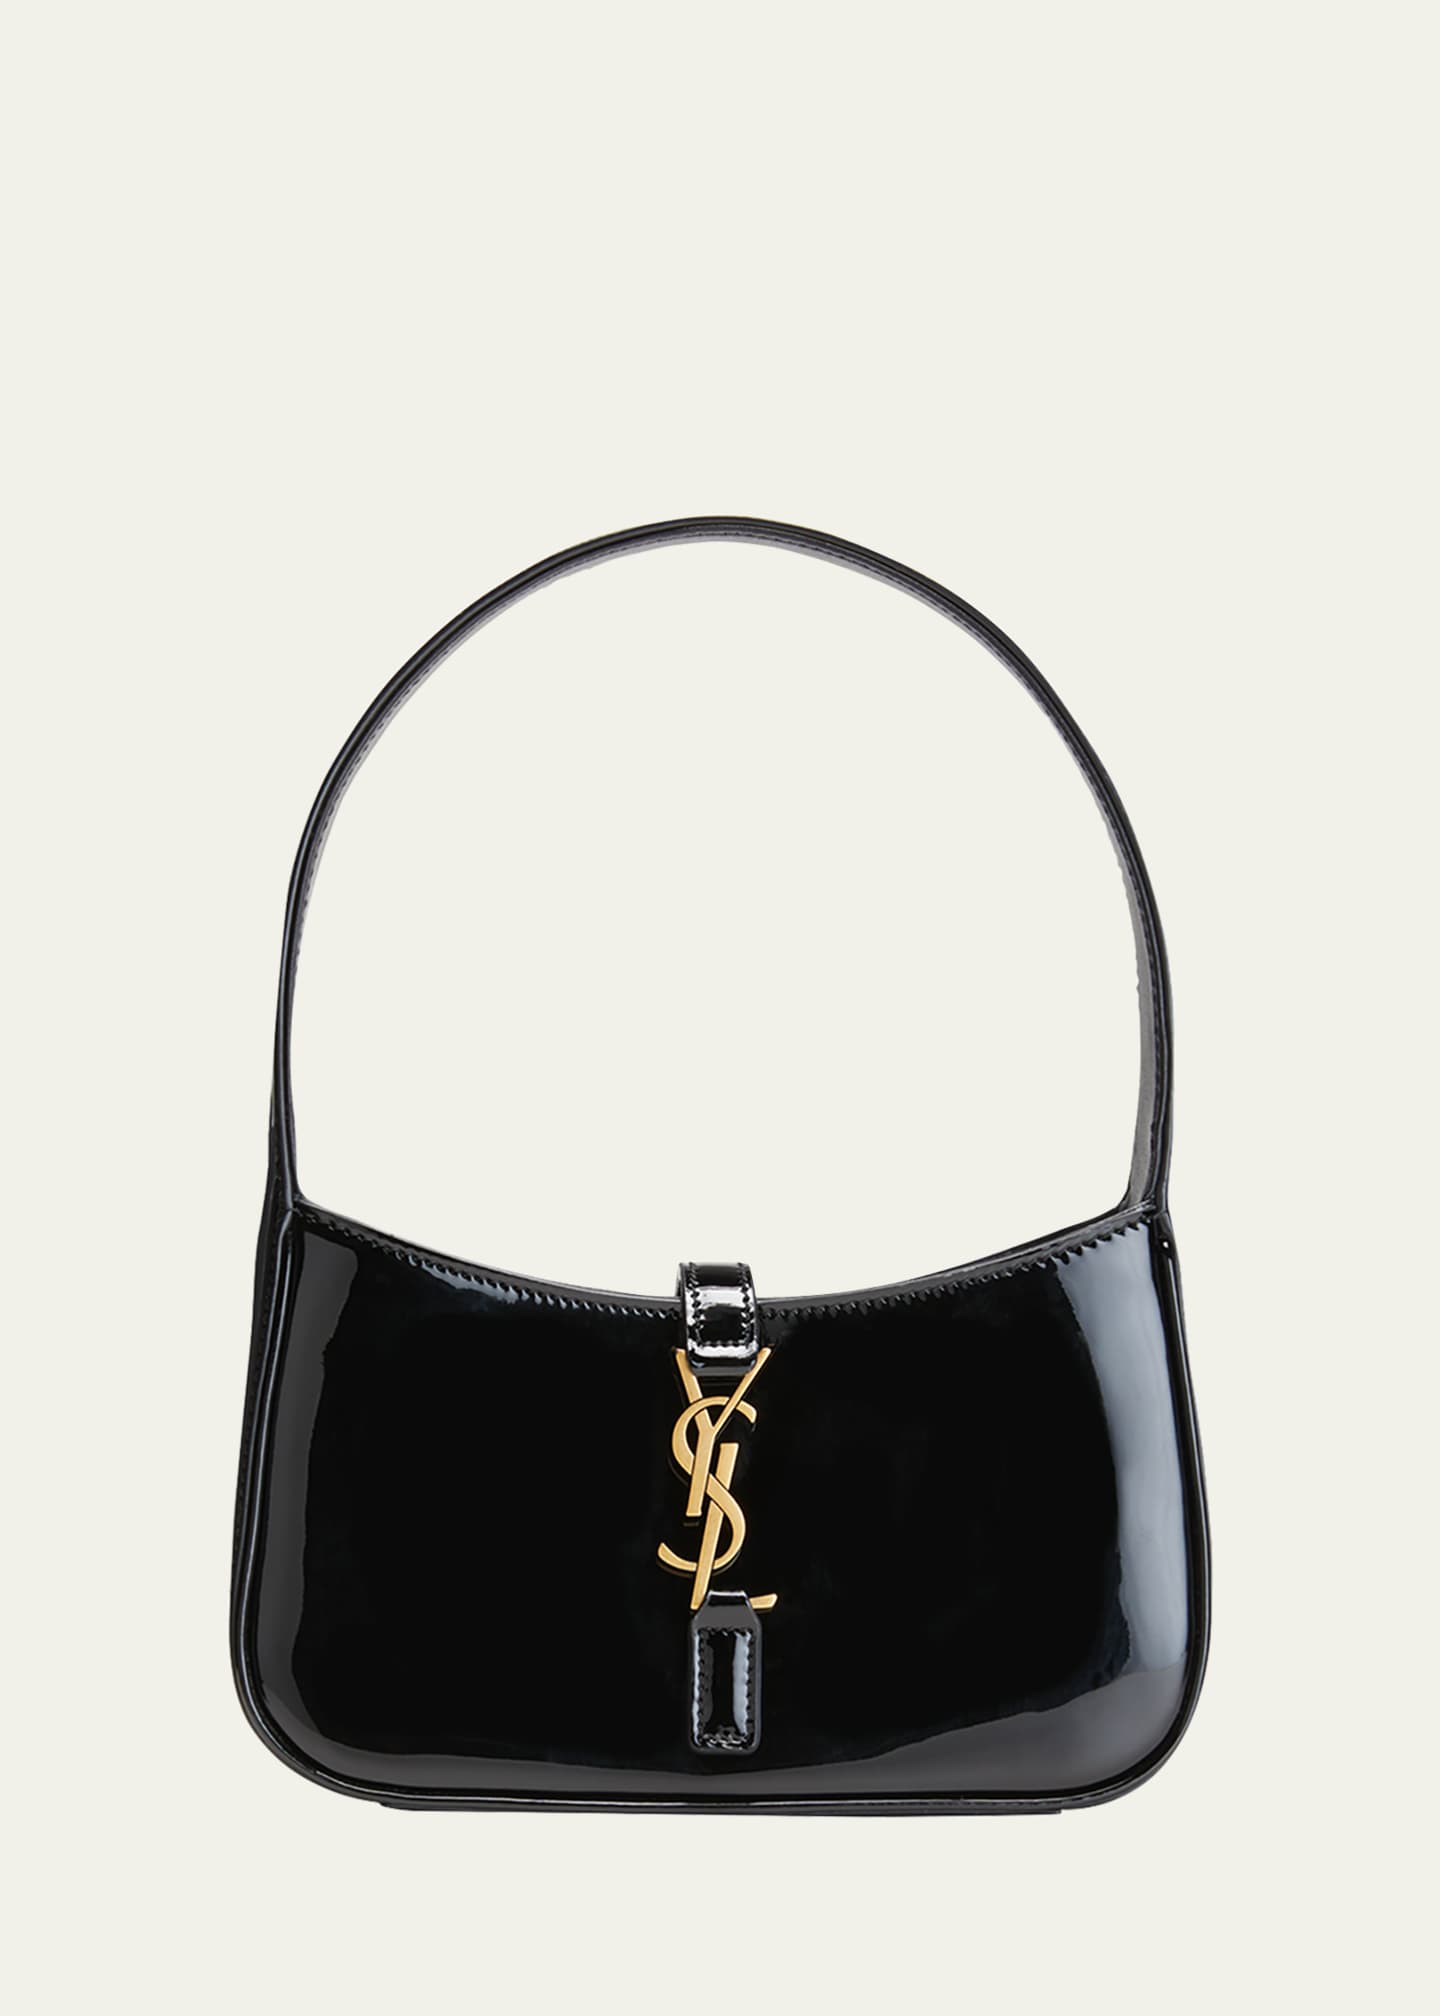 Le 5 A 7 Patent Leather Shoulder Bag in Black - Saint Laurent